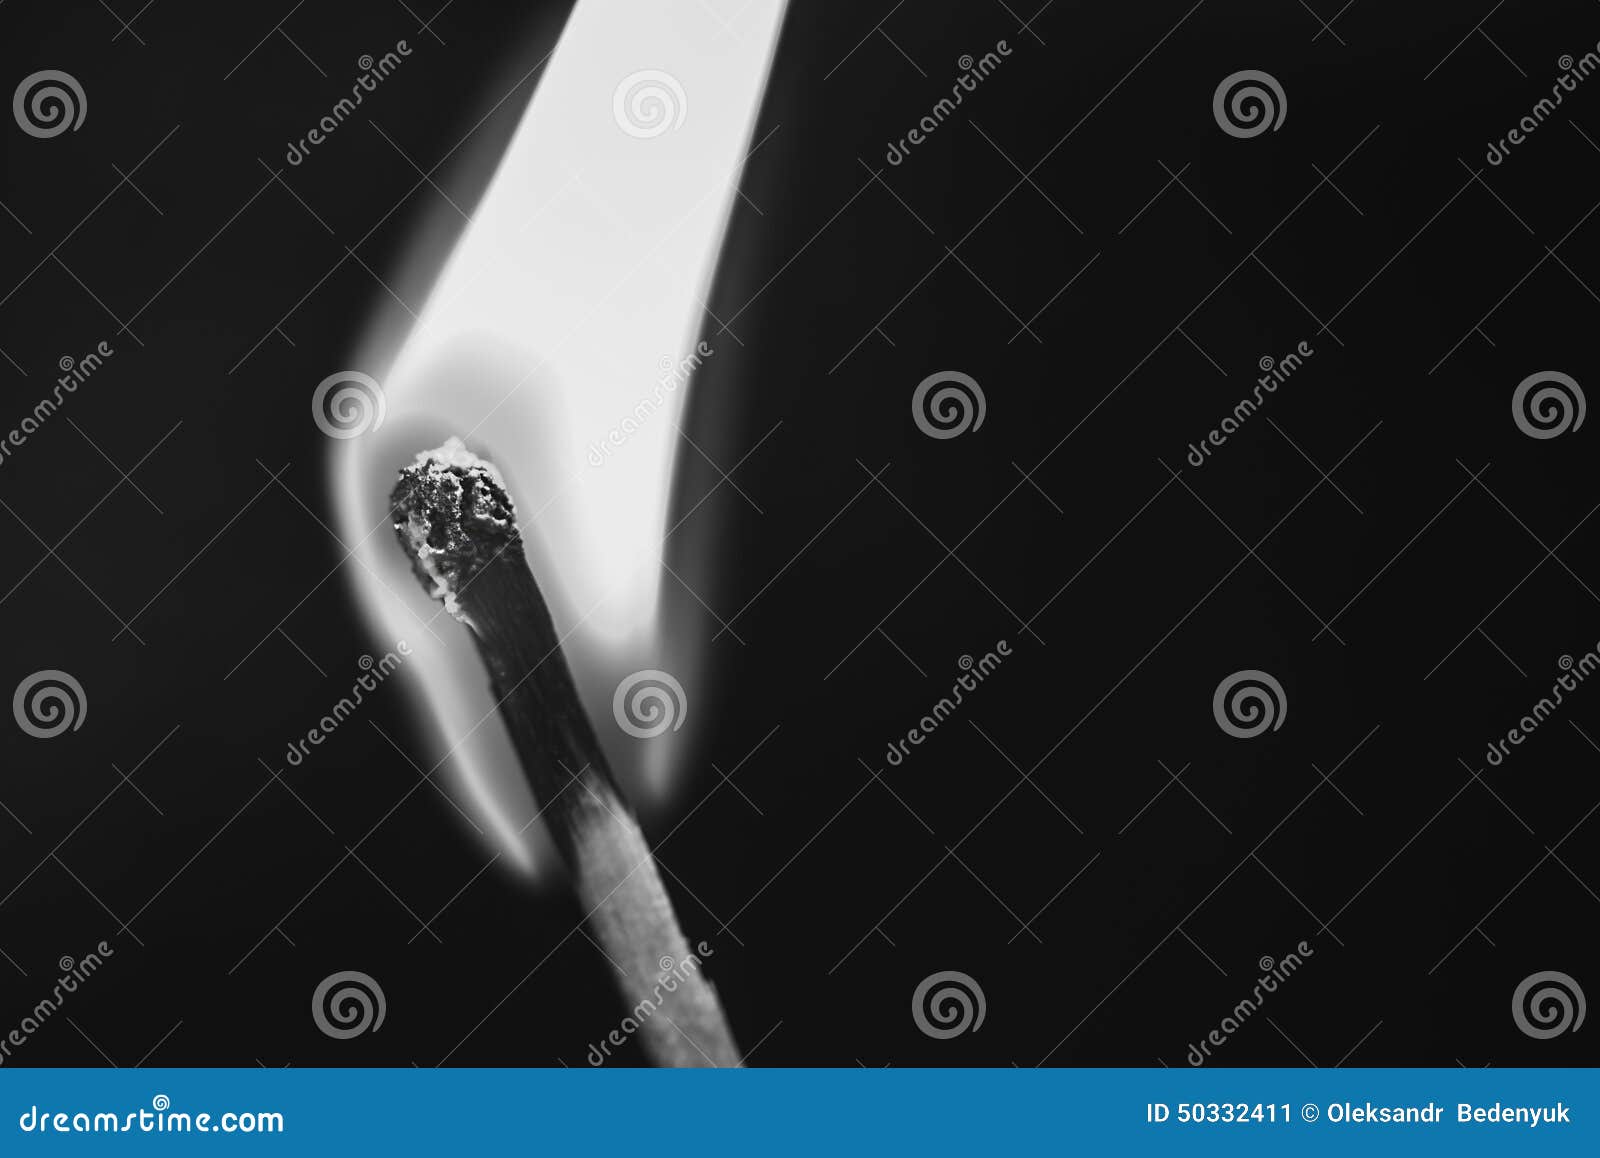 Single Burning Match on Black Background Stock Image - Image of ...